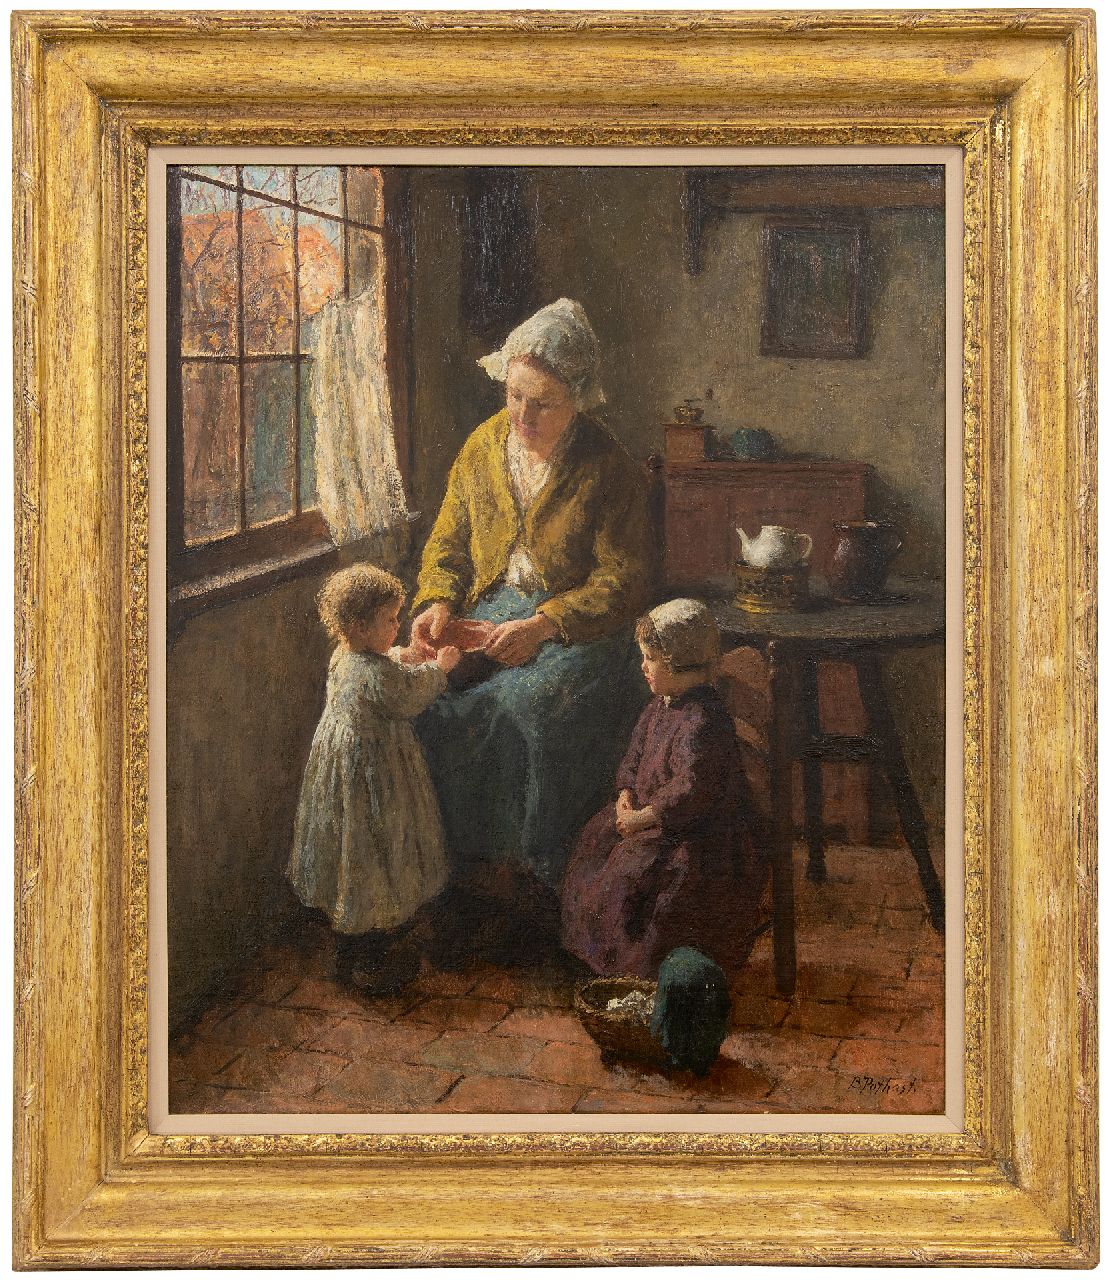 Pothast B.J.C.  | 'Bernard' Jean Corneille Pothast | Schilderijen te koop aangeboden | Larens interieur met moeder en kinderen, olieverf op doek 59,9 x 49,8 cm, gesigneerd rechtsonder